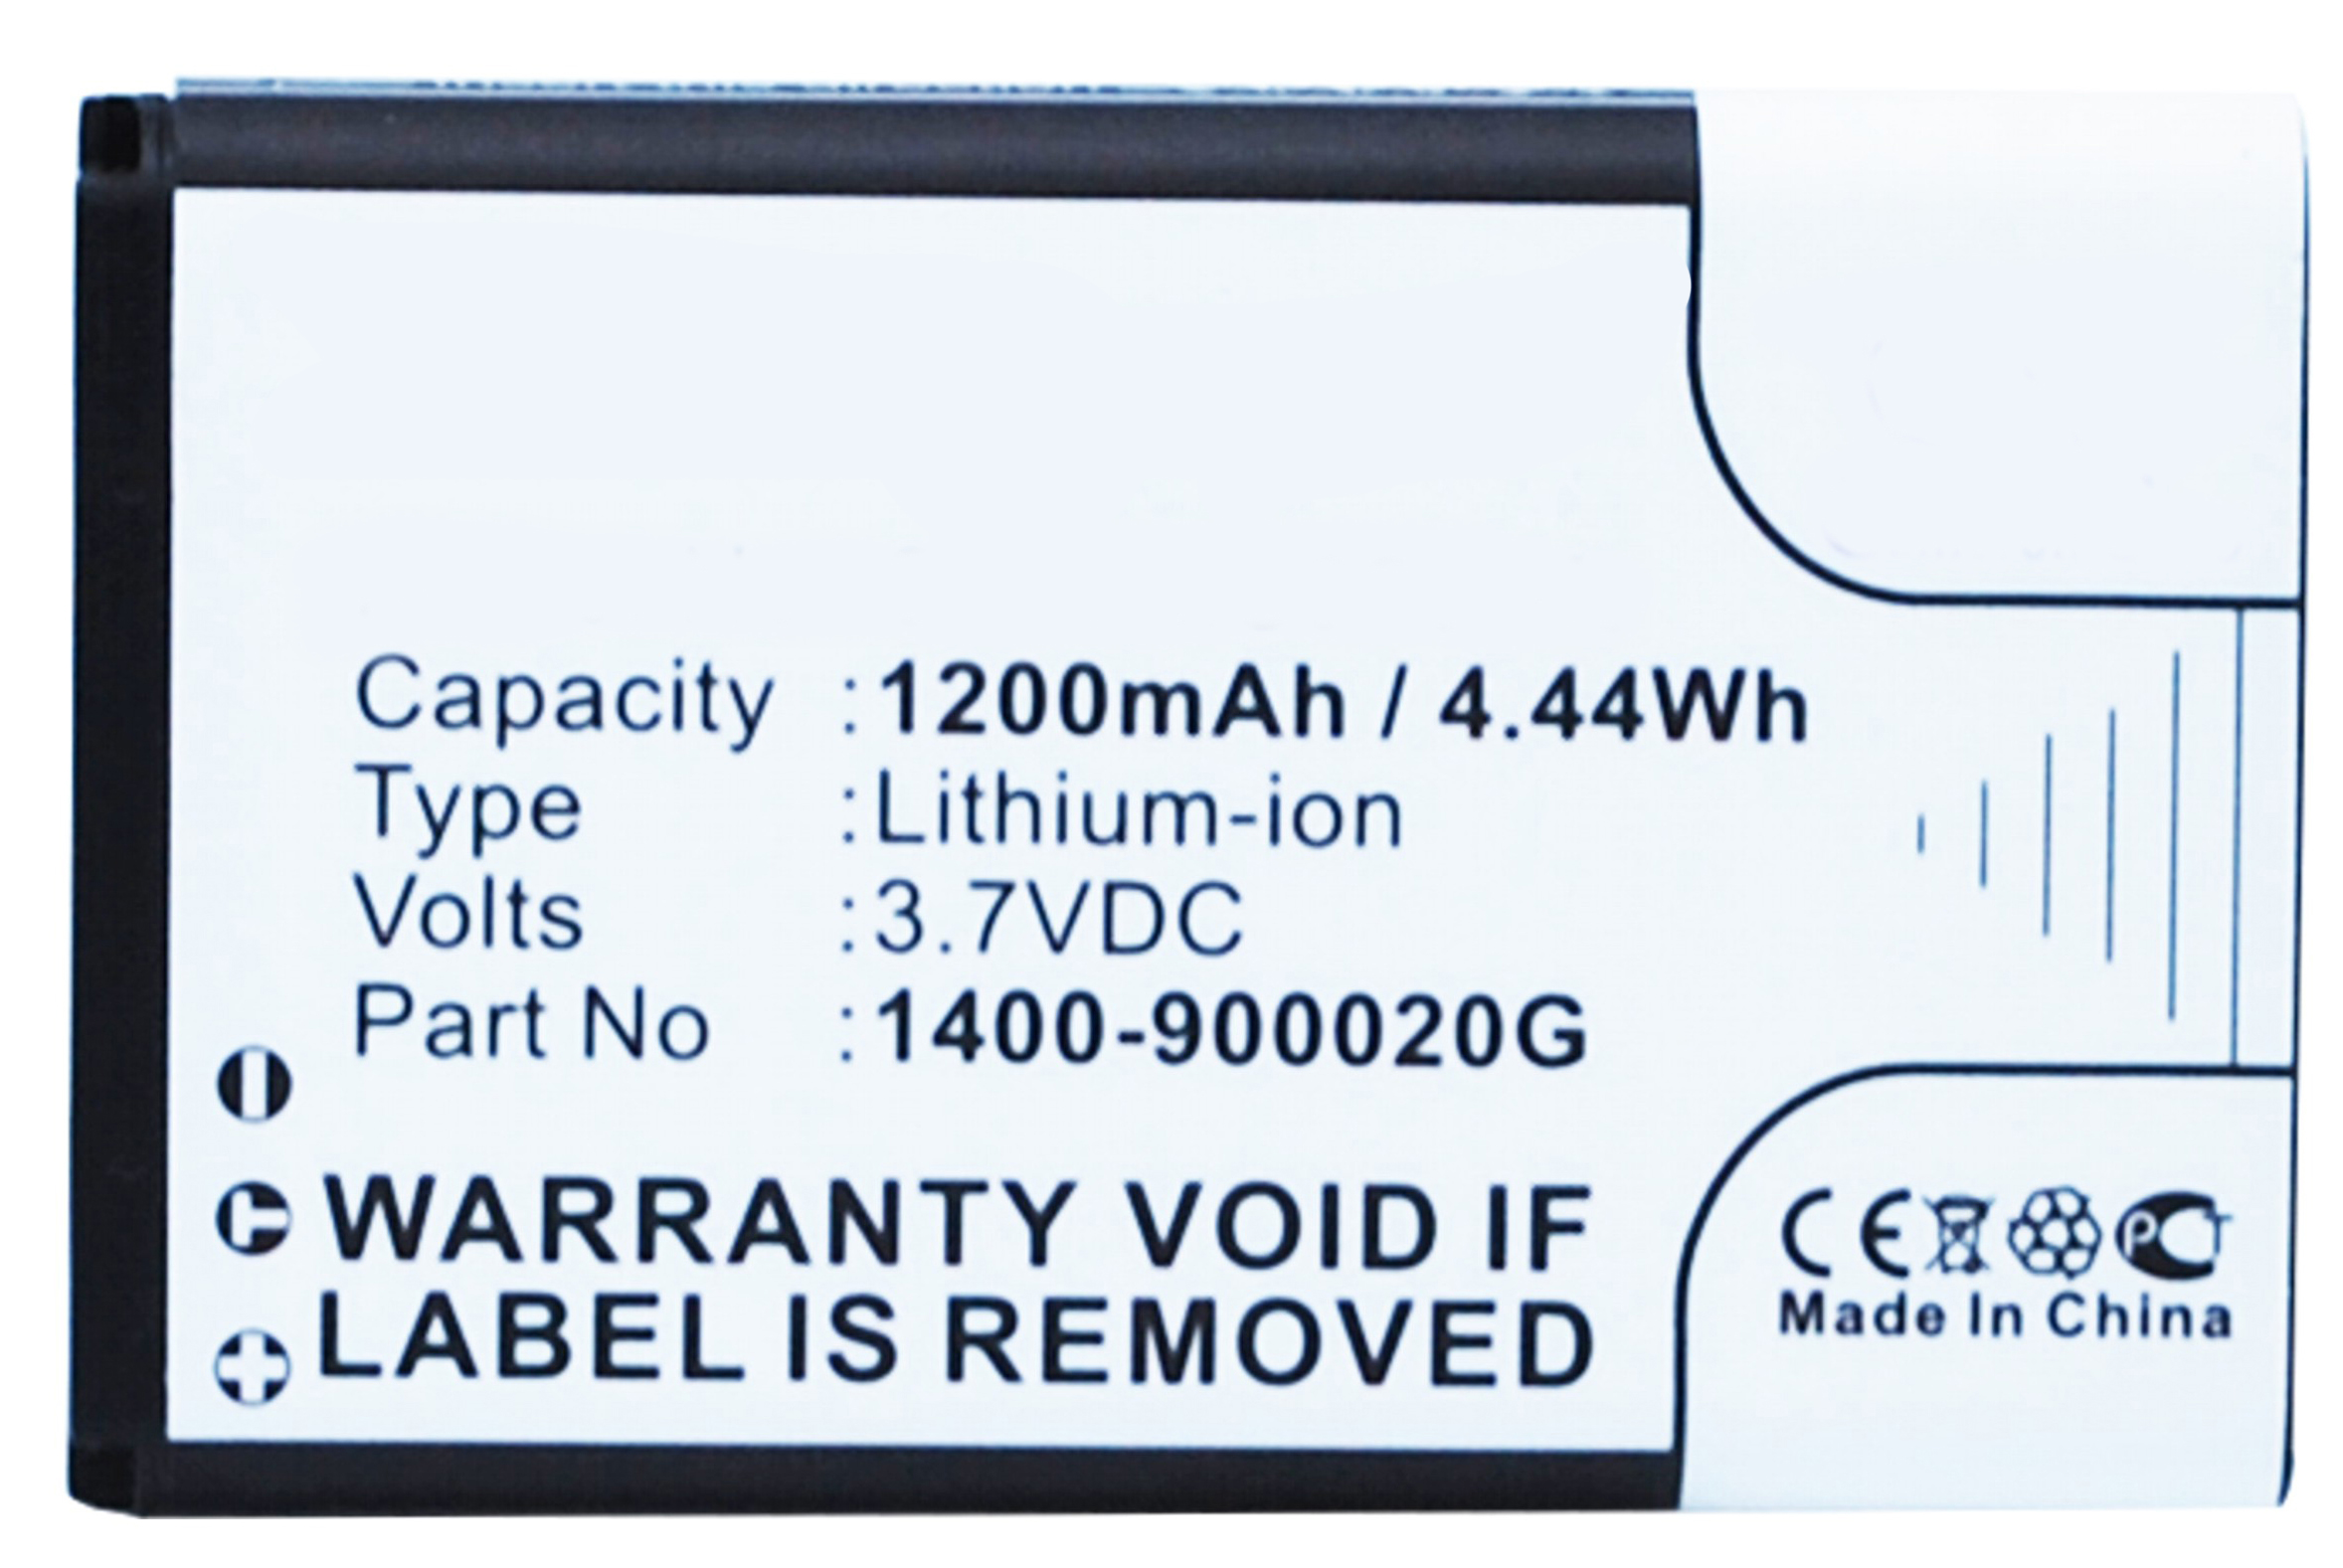 Synergy Digital Barcode Scanner Battery, Compatible with Unitech 1400-900020G Barcode Scanner Battery (Li-ion, 3.7V, 1200mAh)